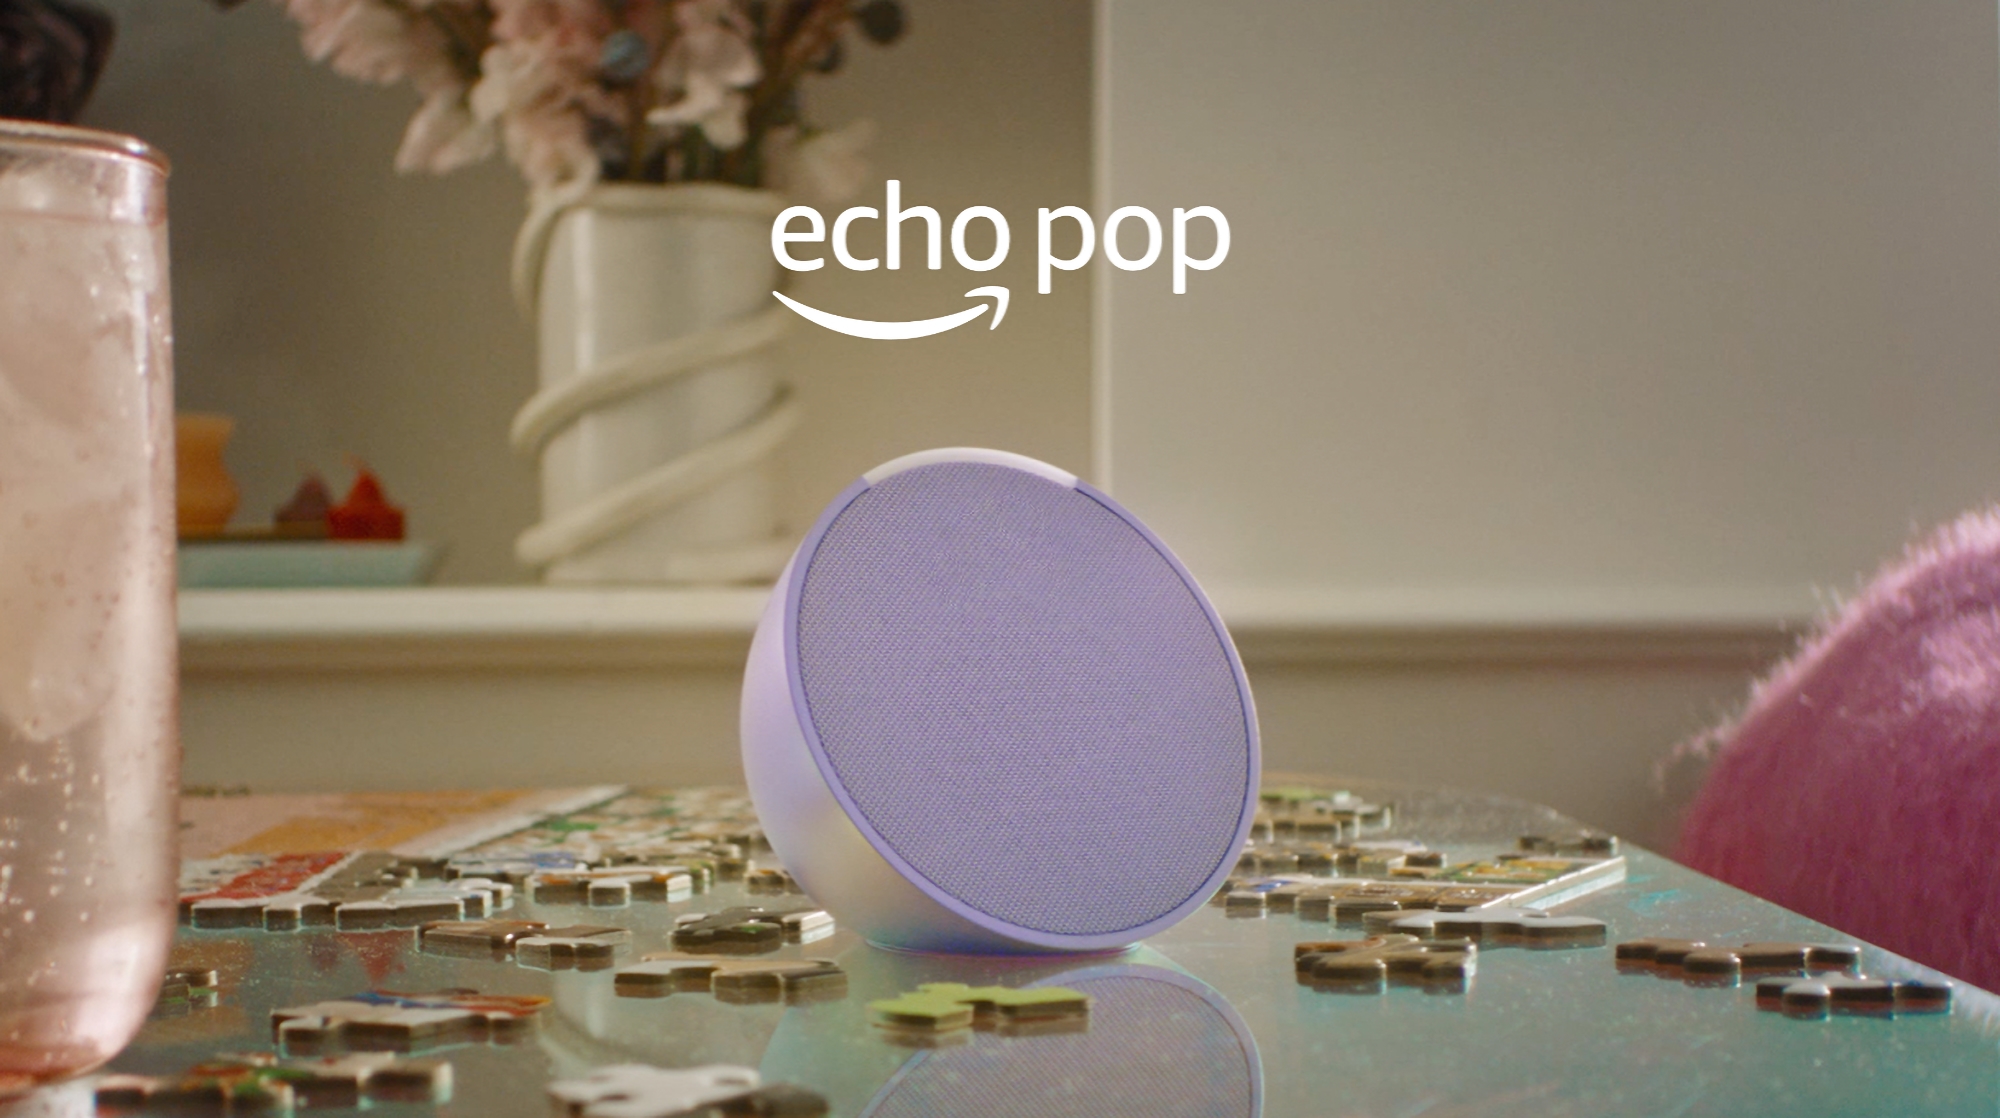 Amazon introduceert Echo Pop: slimme speaker met spraakassistent Alexa voor 39 dollar